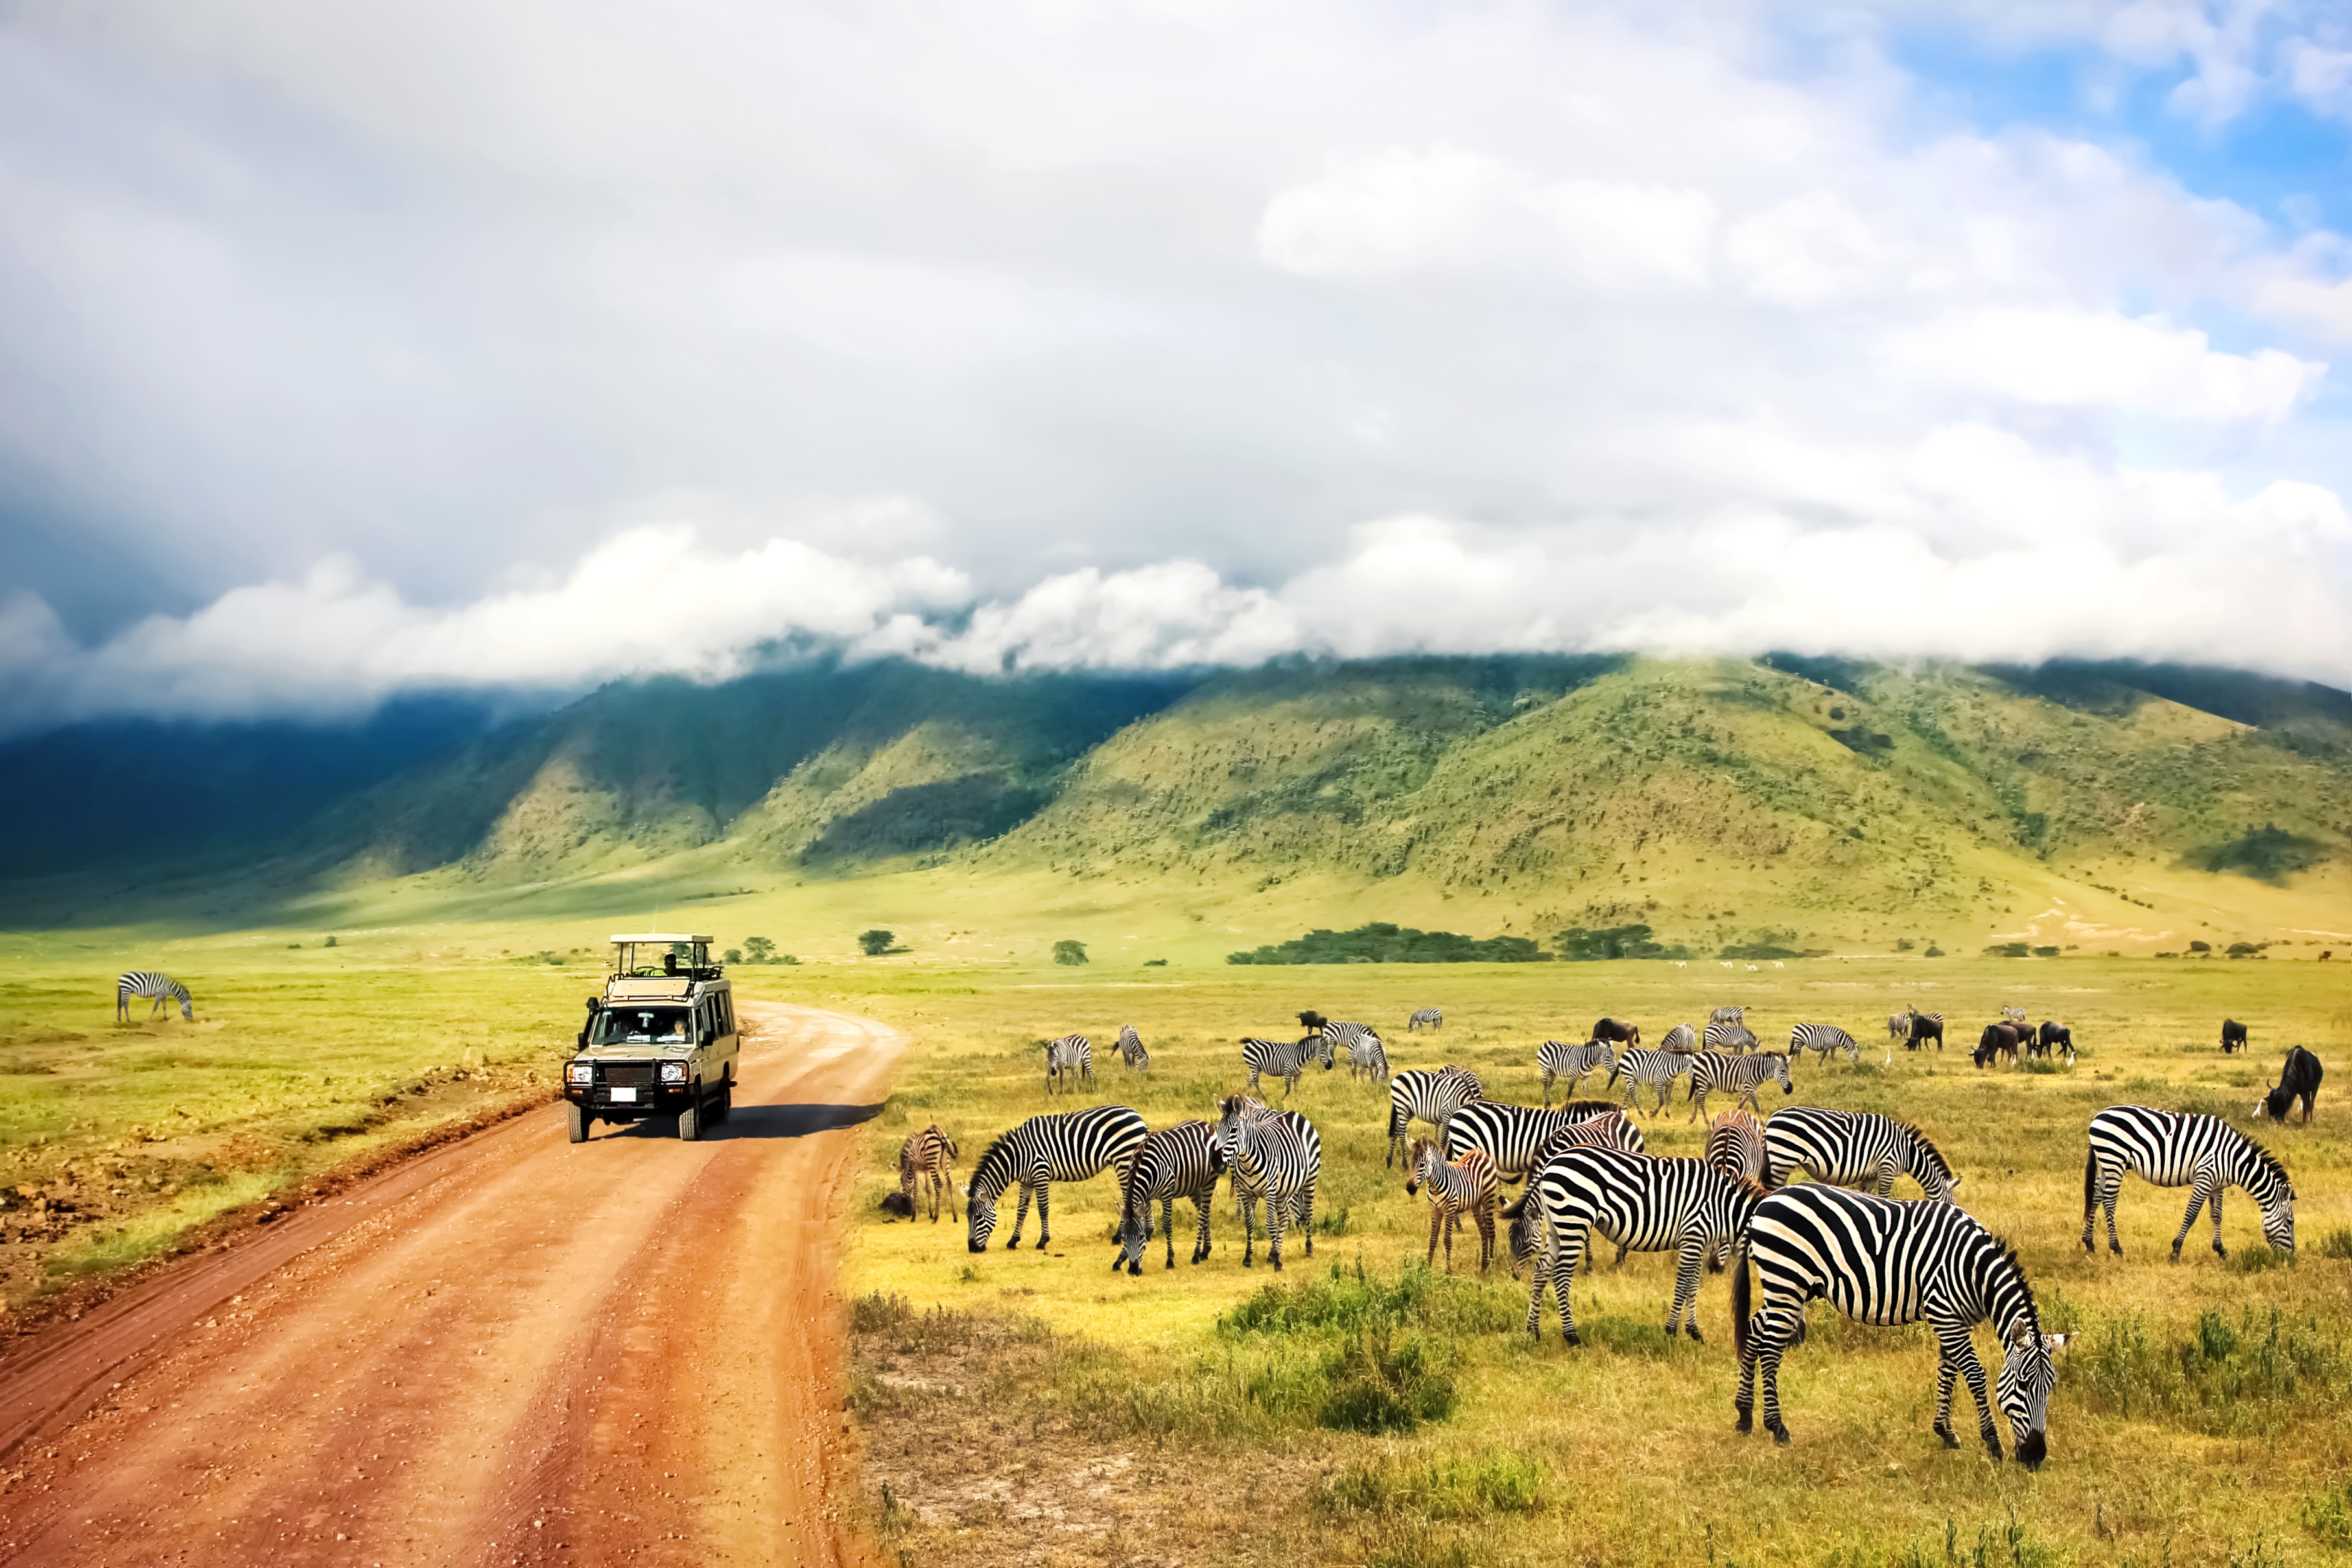 Équipement pour un safari photo en Afrique - Au cœur de la nature